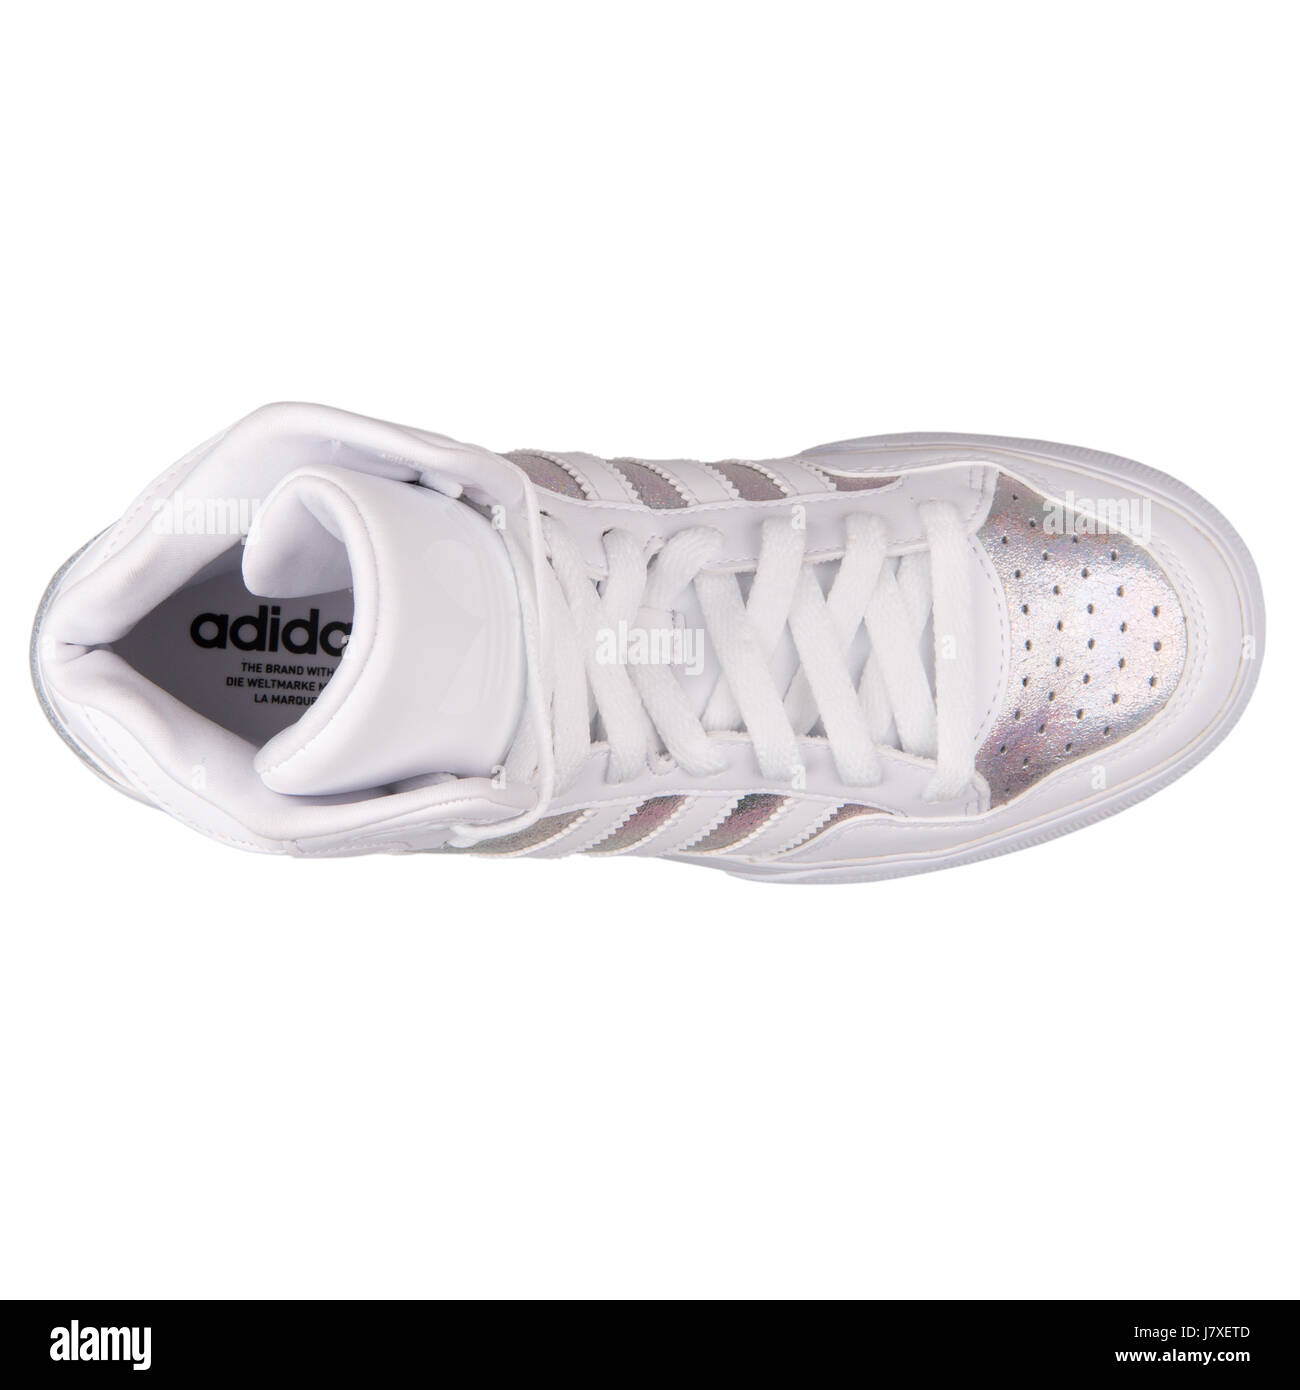 Adidas Extaball Mujer Blanco iridiscente cuero metalizado plata Sneakers - S77398 Fotografía stock Alamy